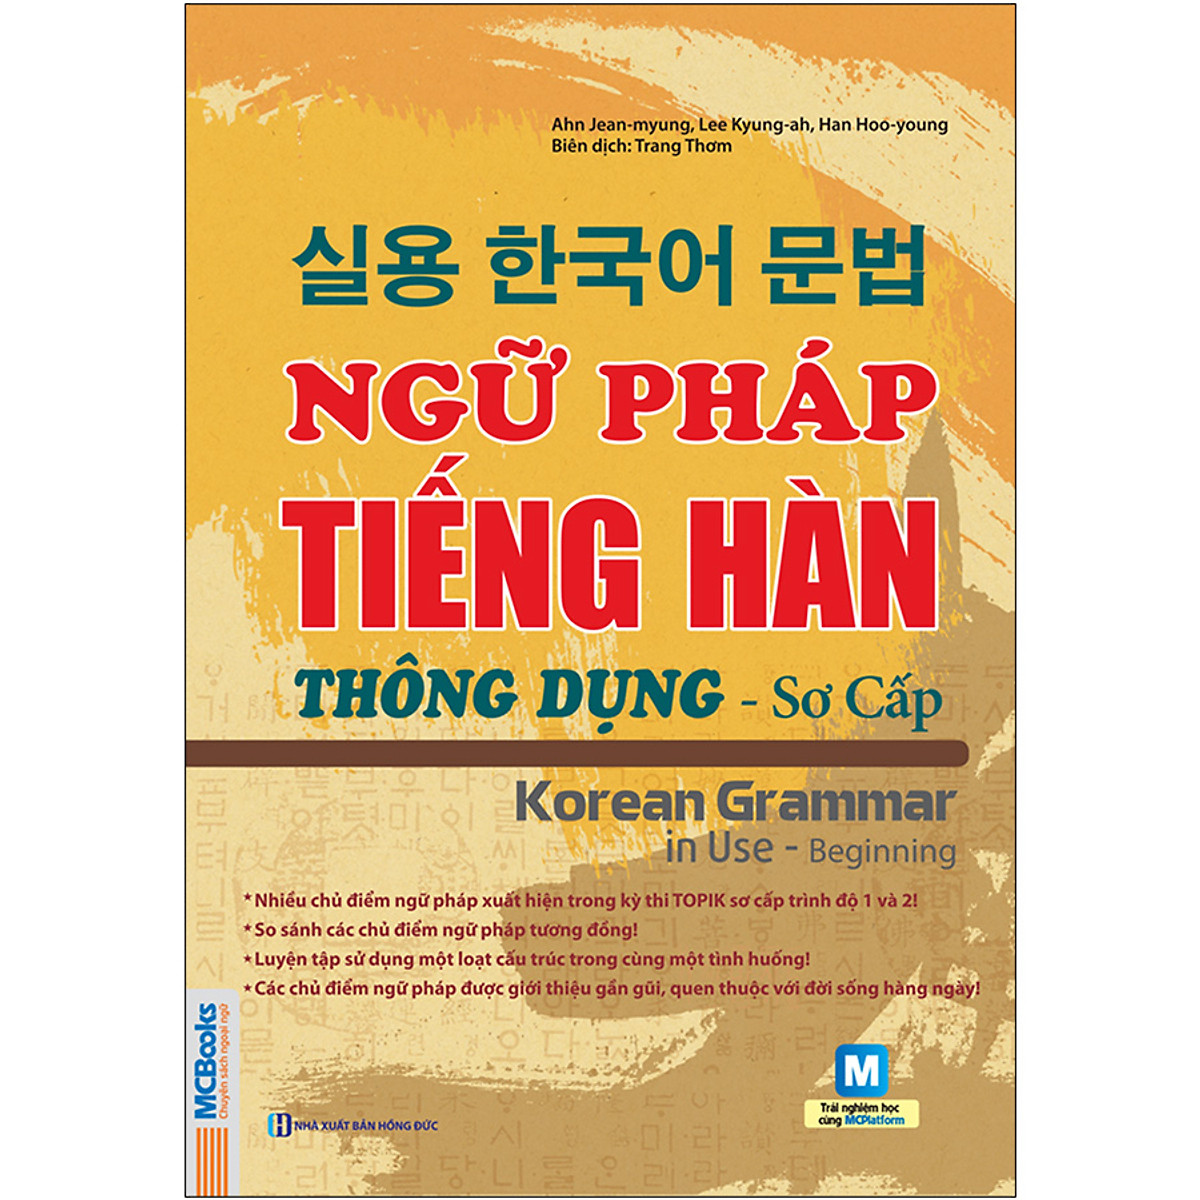 Ngữ Pháp Tiếng Hàn Thông Dụng - Sơ Cấp -  Korean Grammar In Use Beginning (Học Cùng App MCBooks) - MinhAnBooks